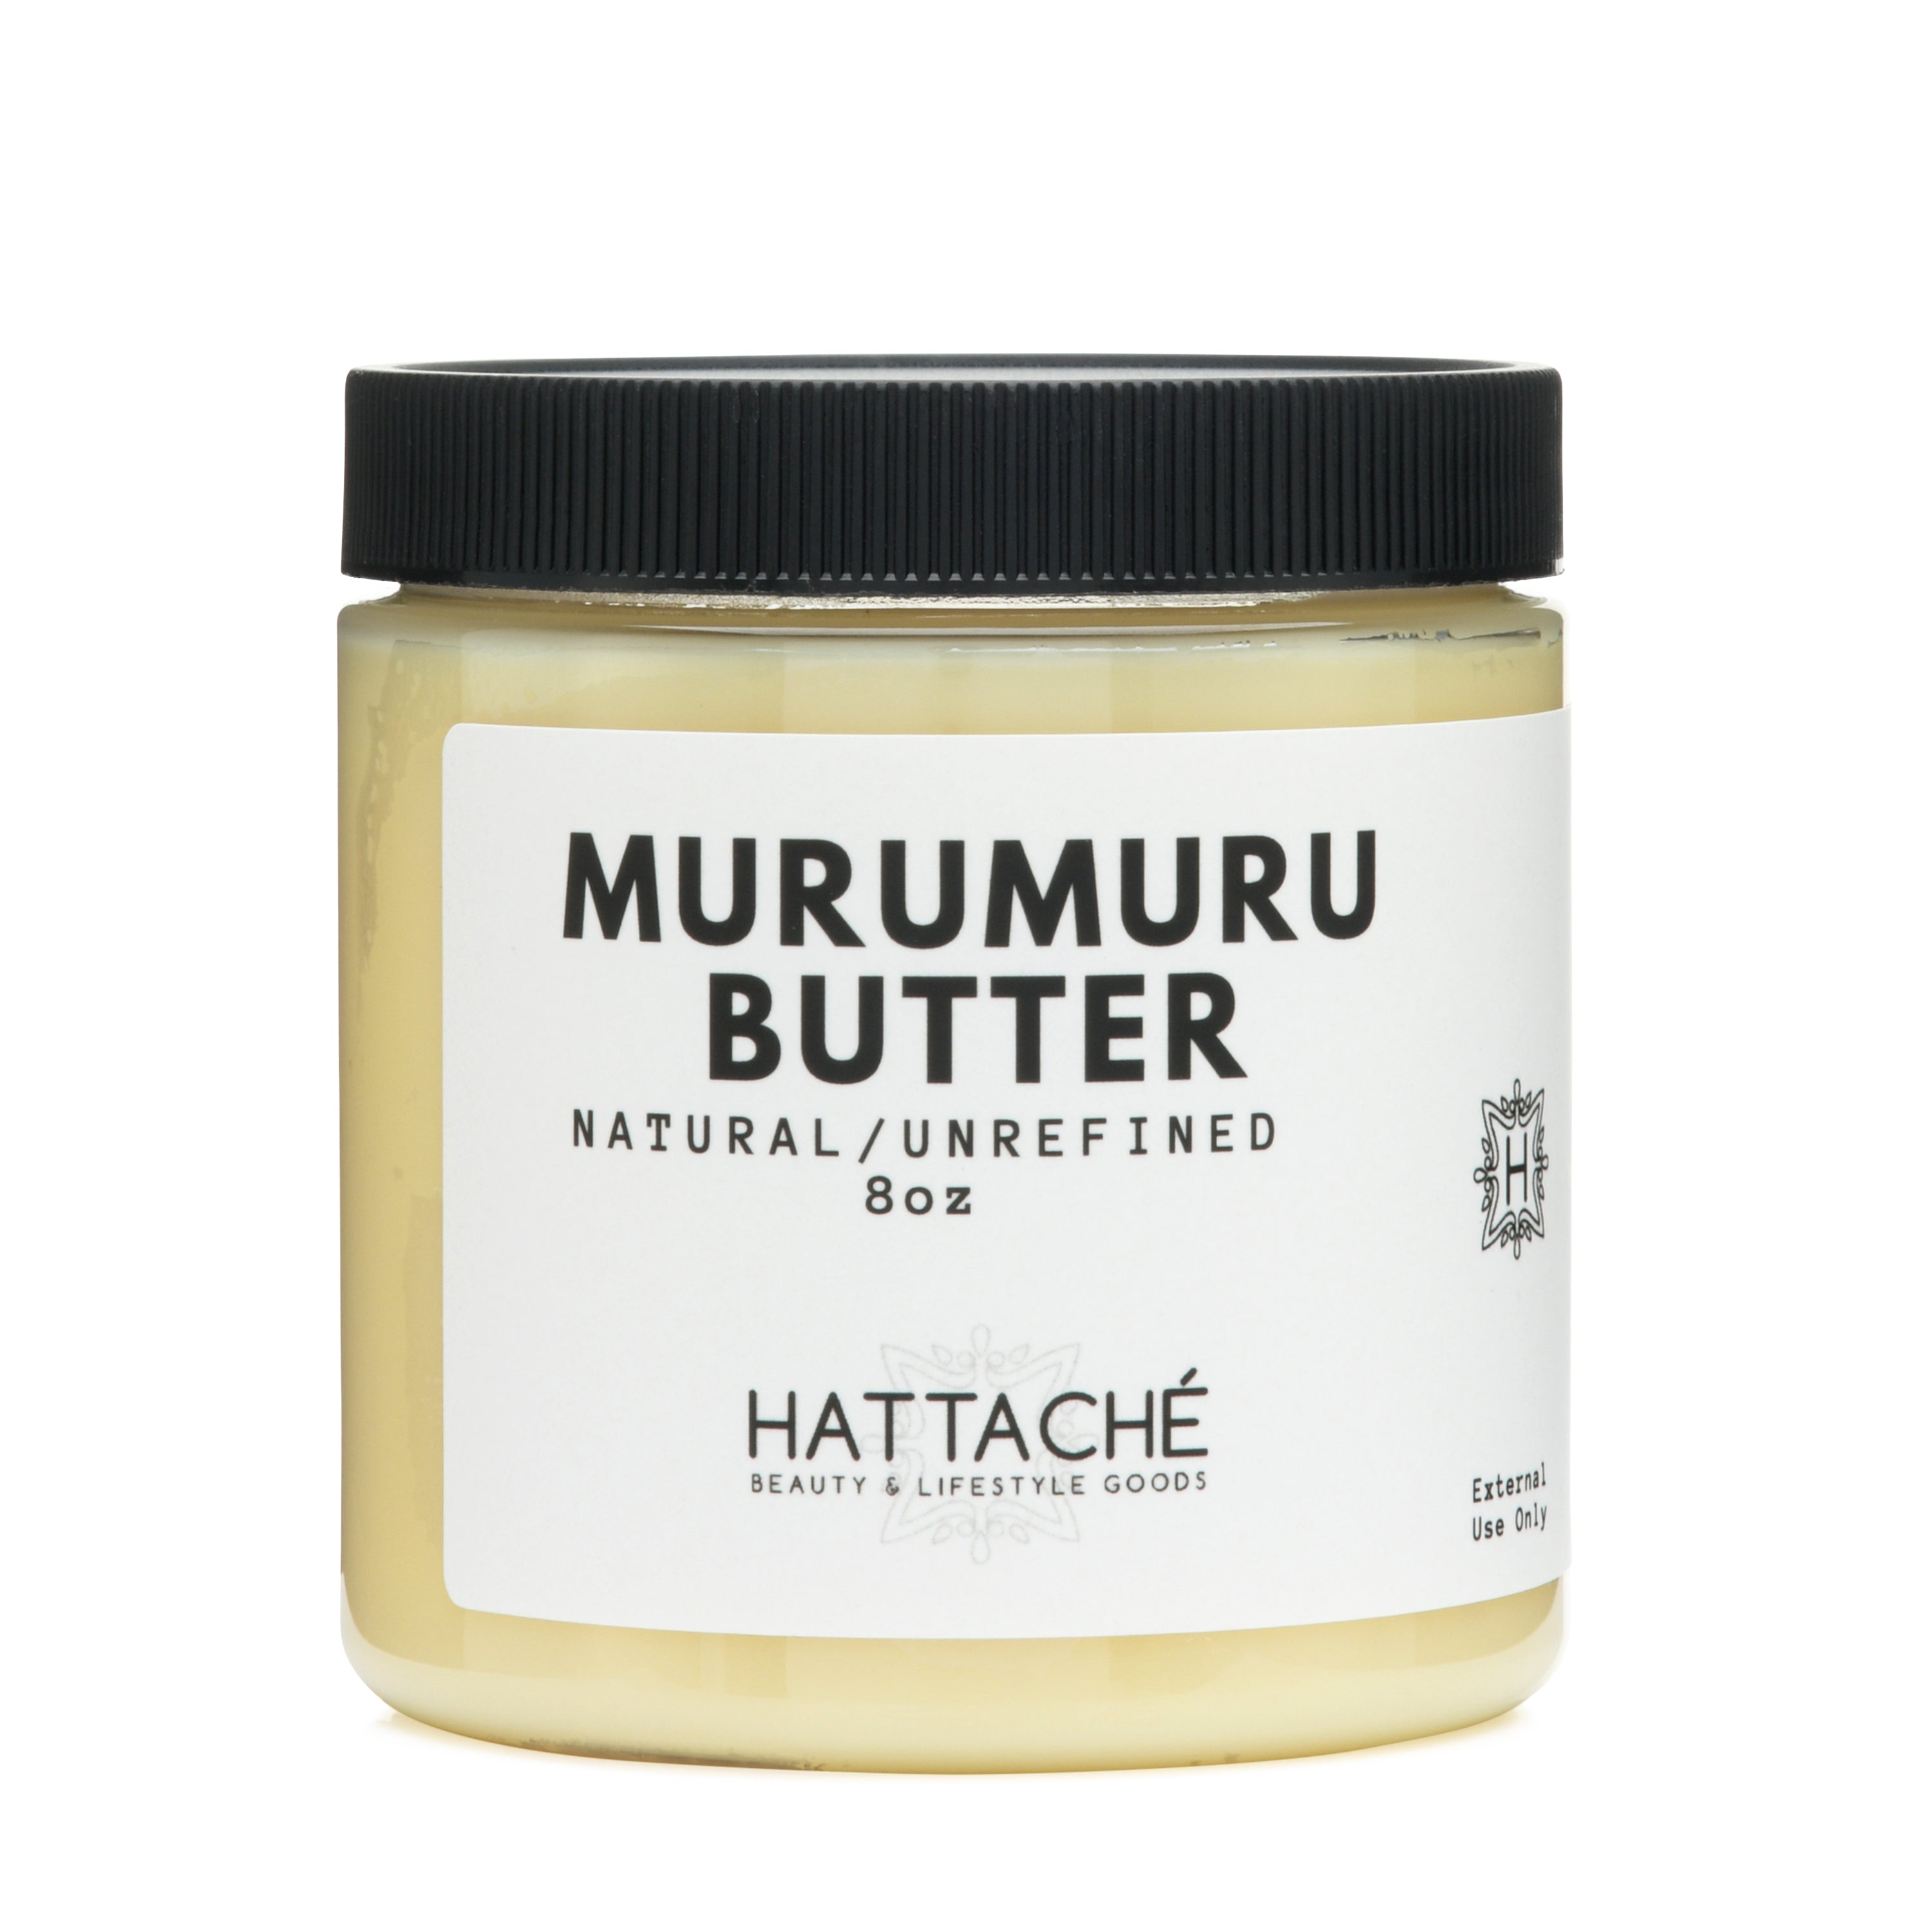 Murumuru Butter: The Complete Guide